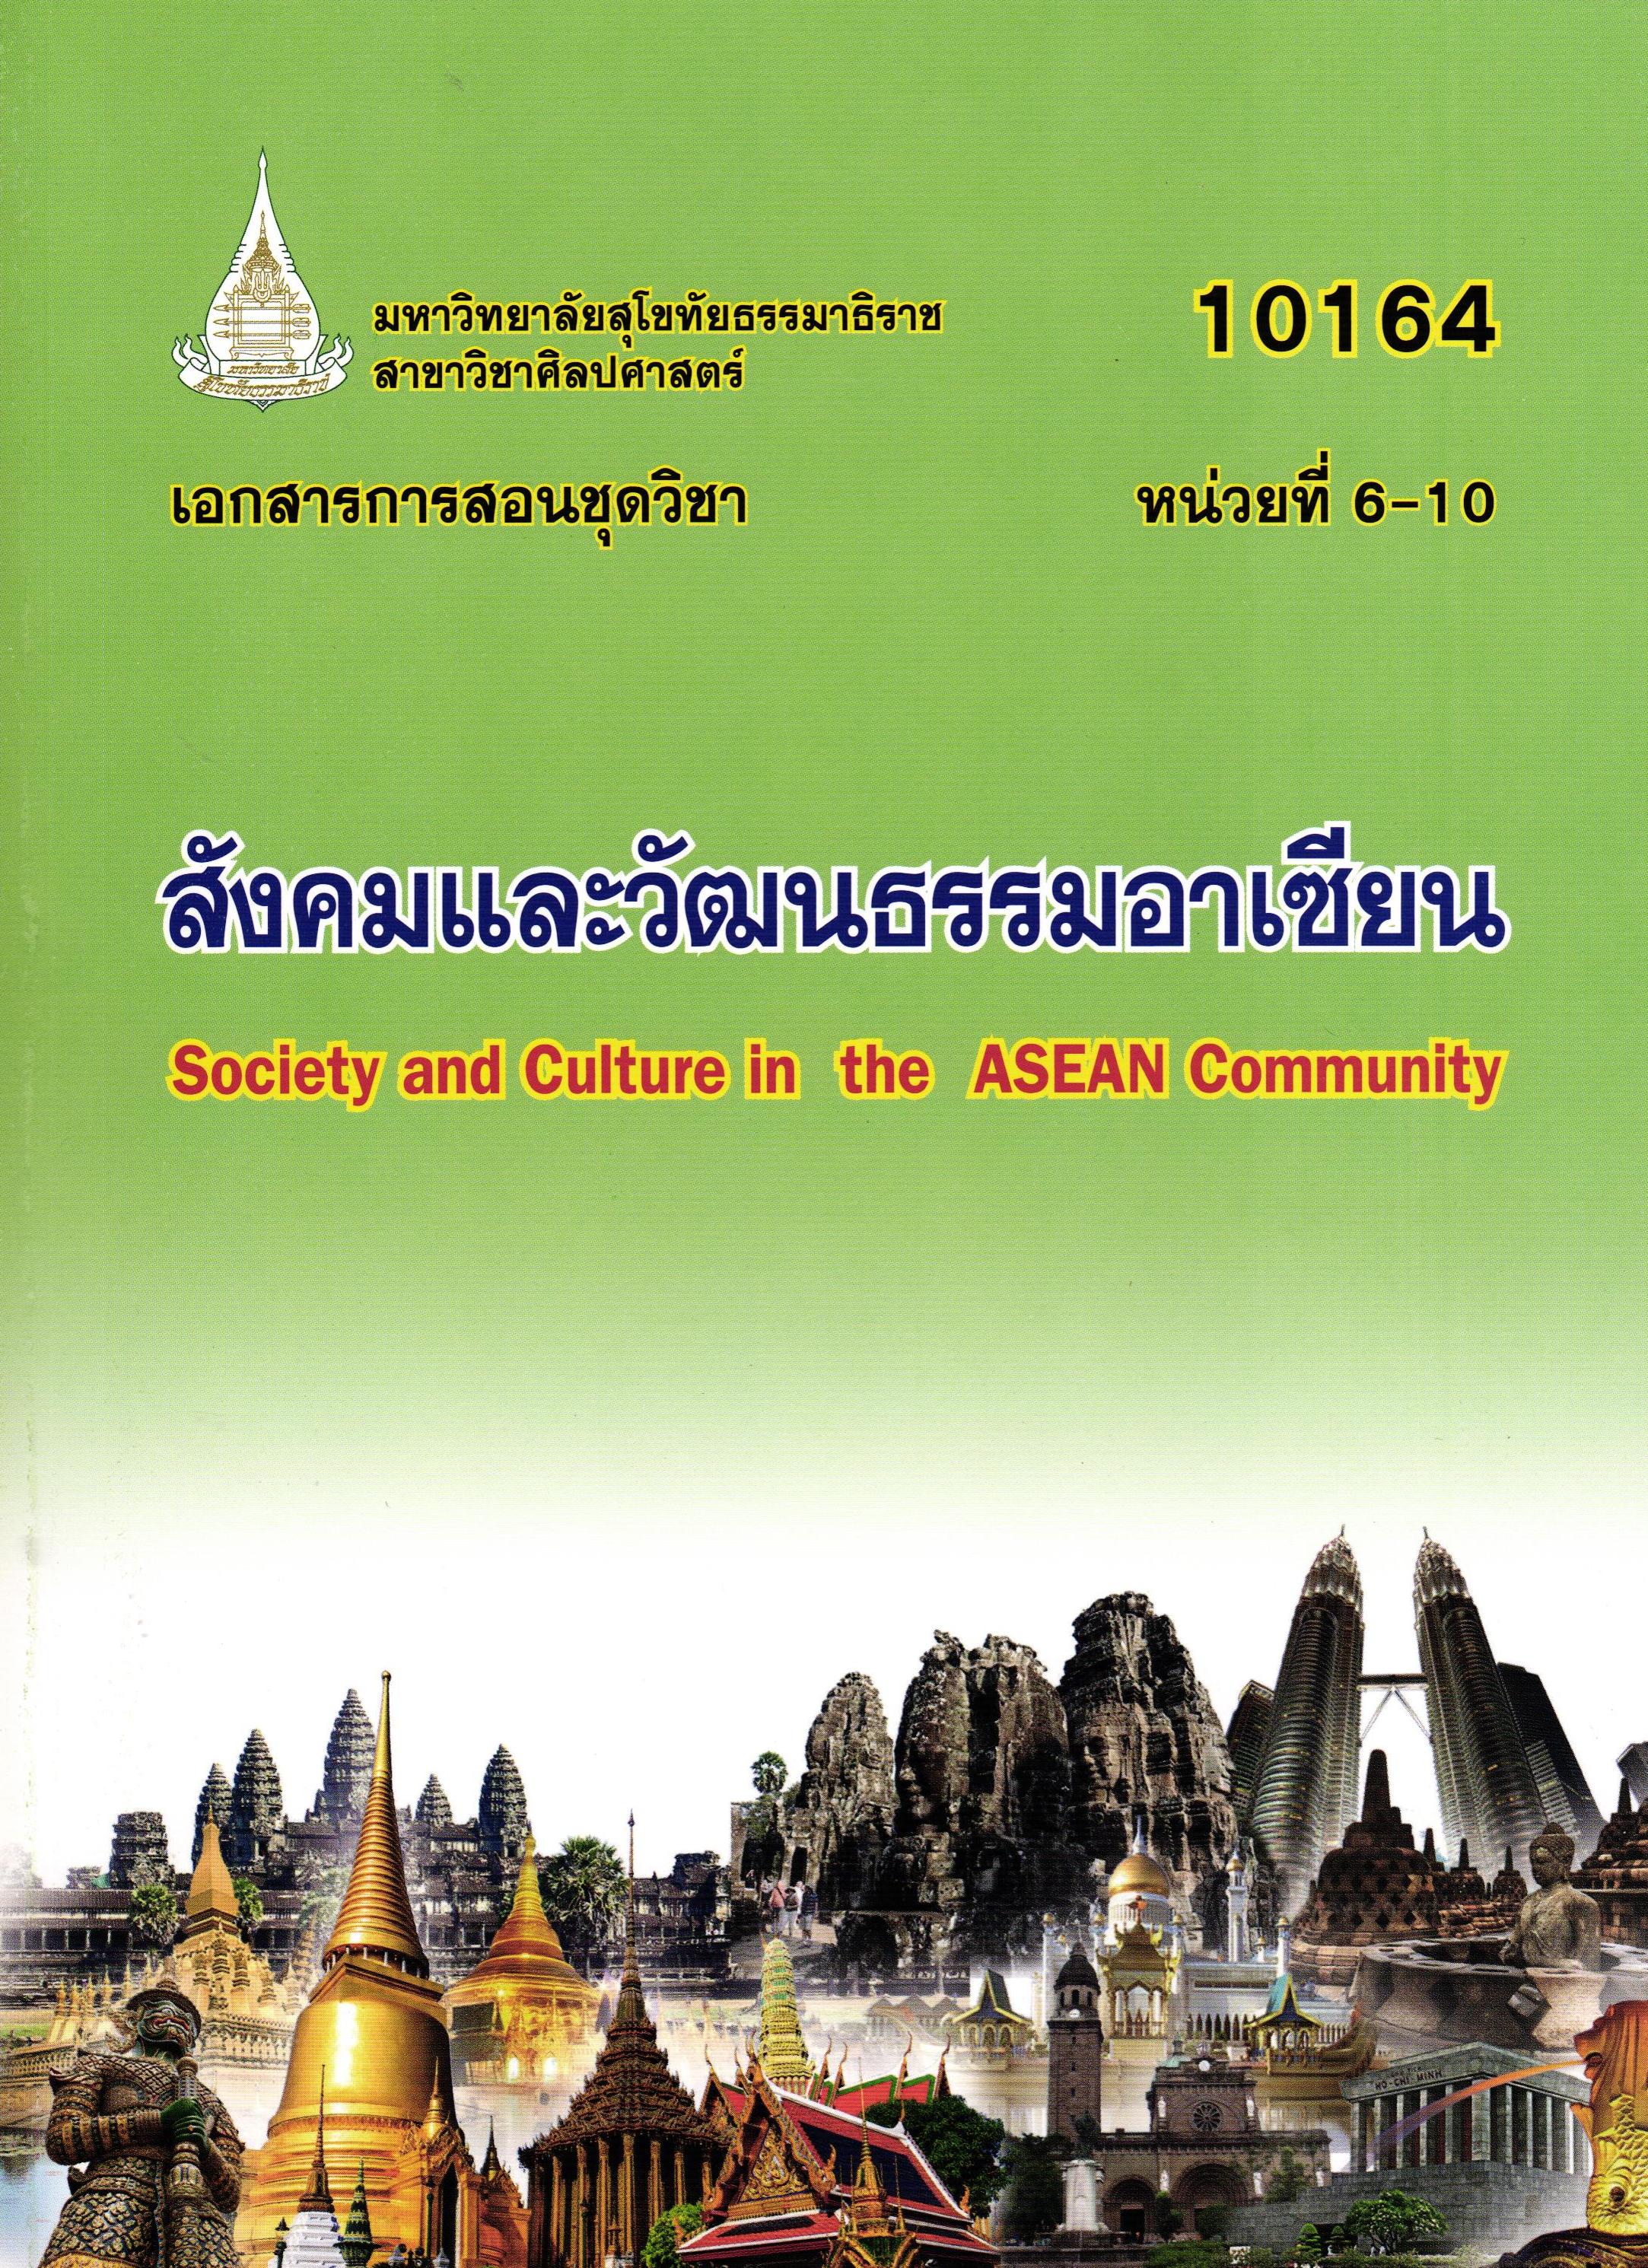 เอกสารการสอนชุดวิชา สังคมและวัฒนธรรมอาเซียน หน่วยที่ 6-10